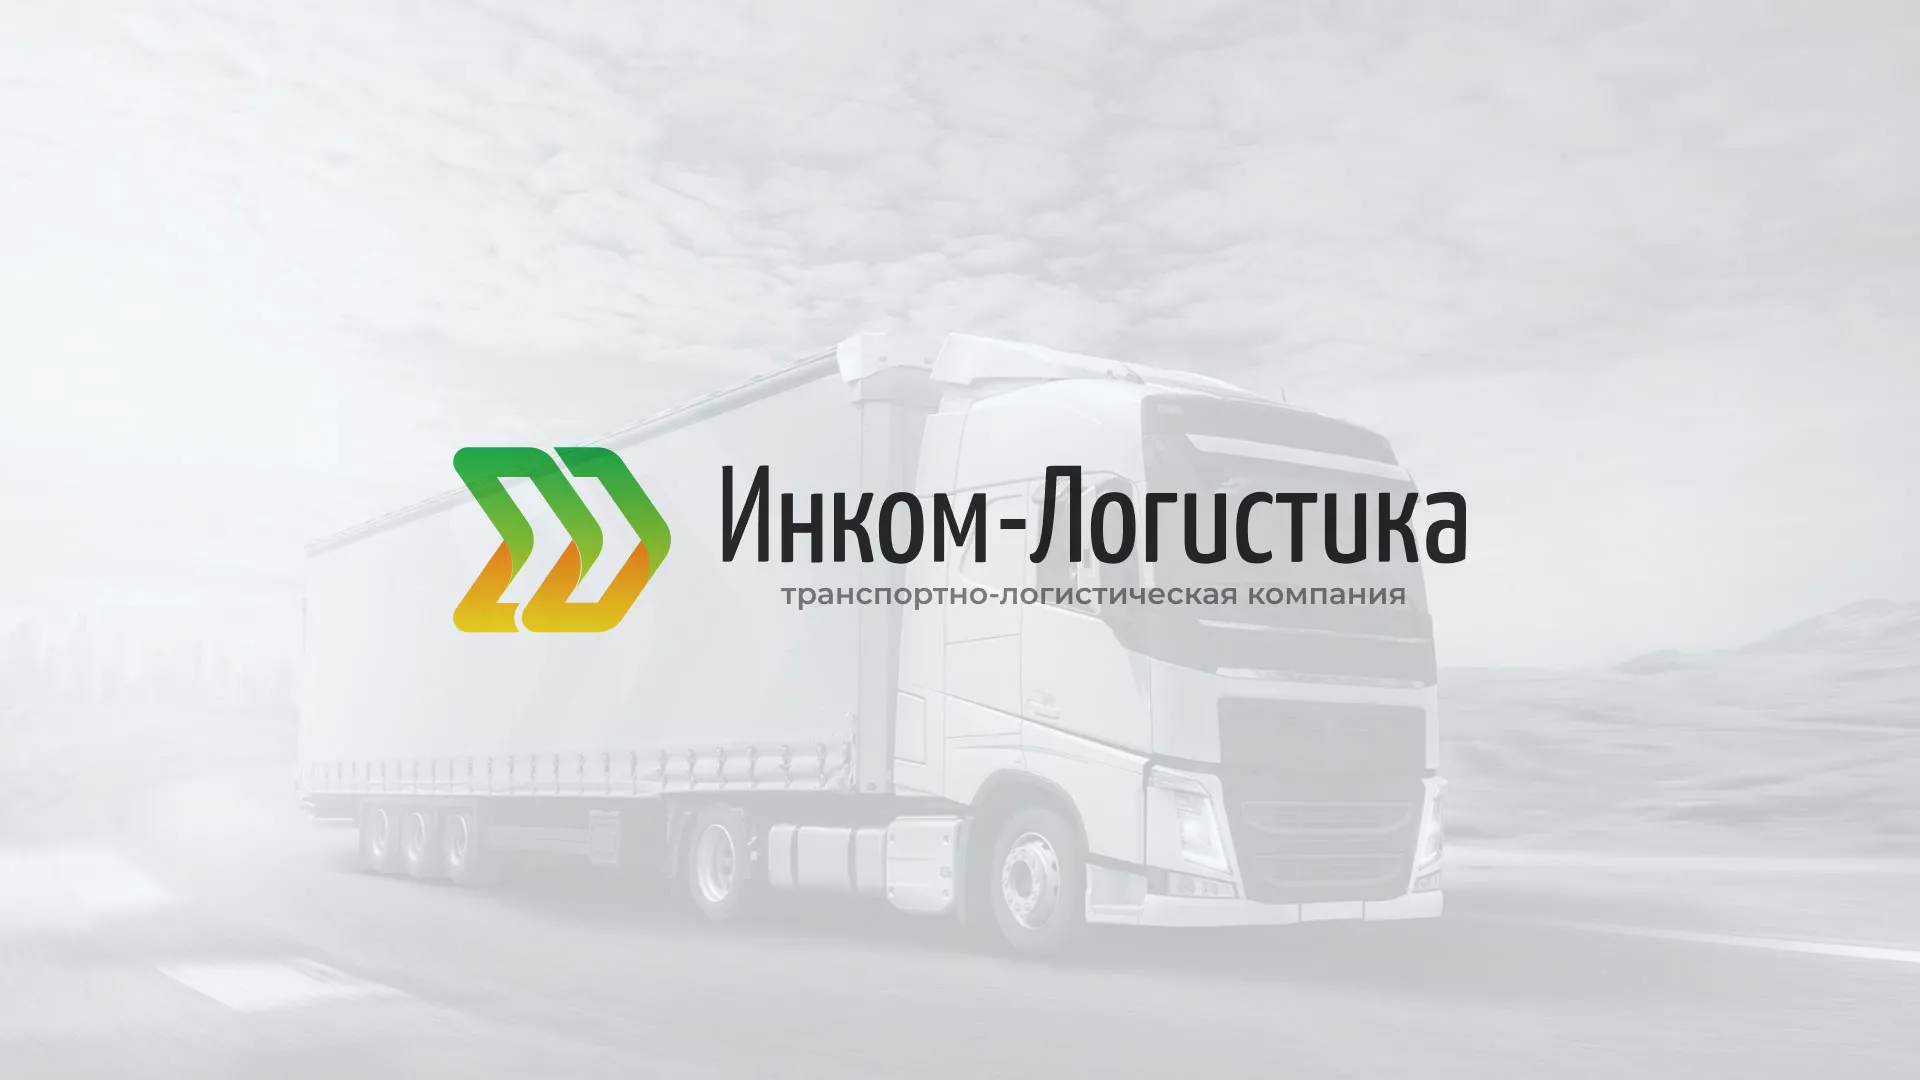 Разработка логотипа и сайта компании «Инком-Логистика» в Жуковке